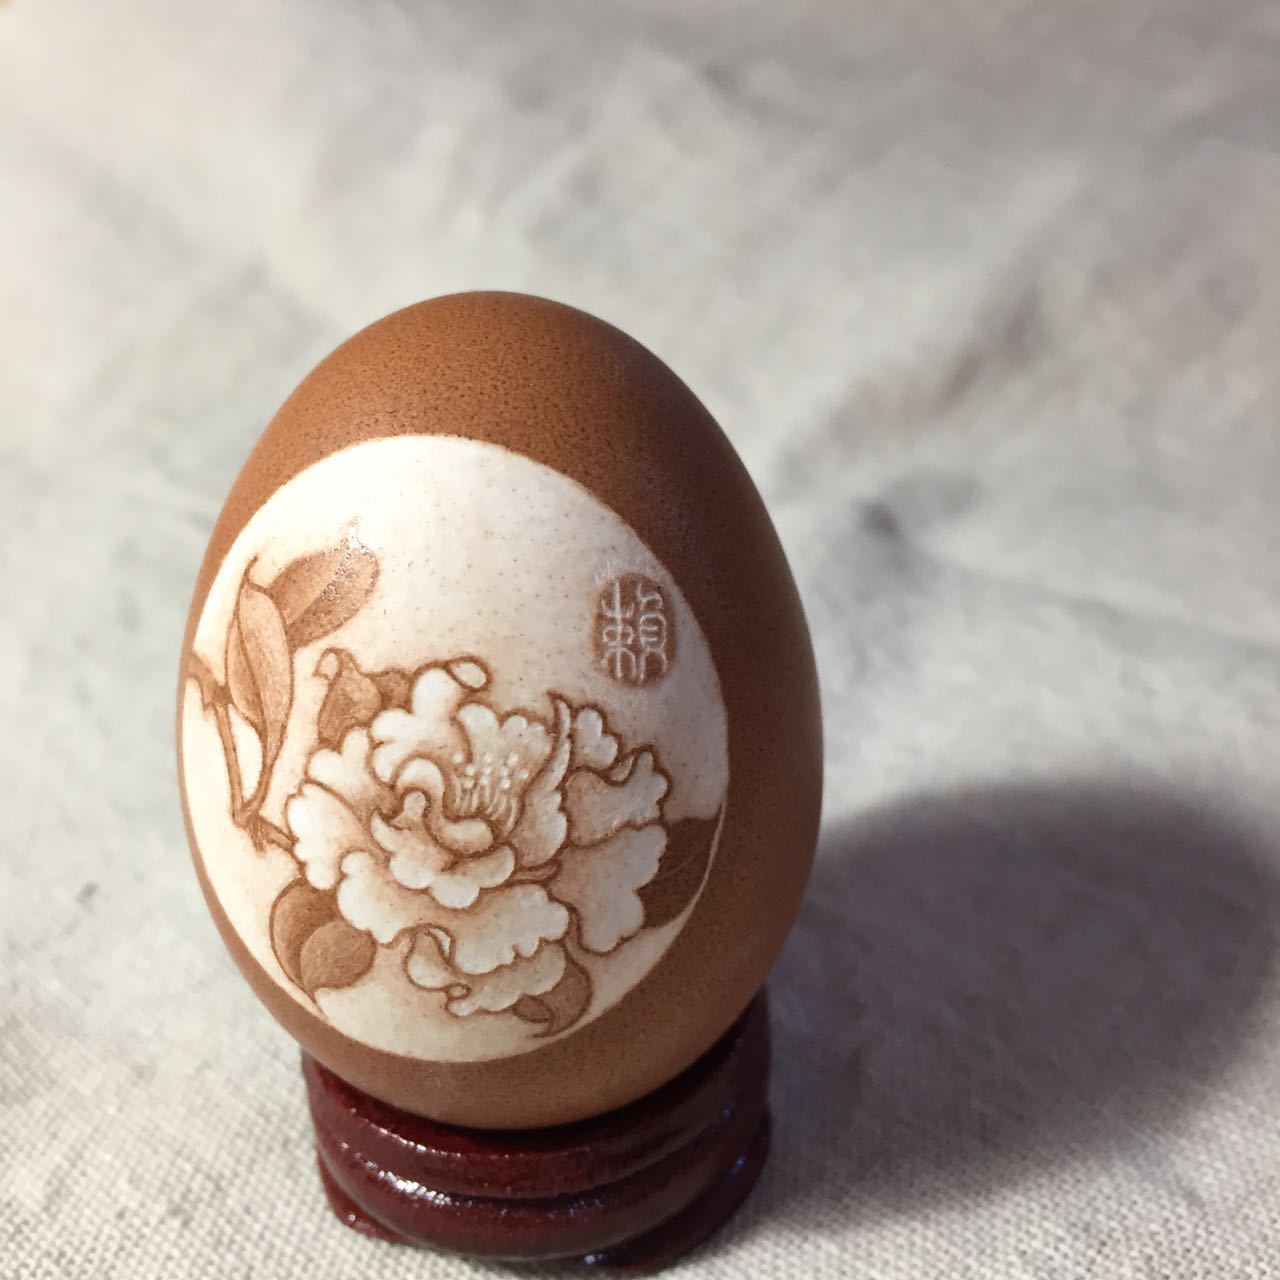 蛋雕图案素材图片